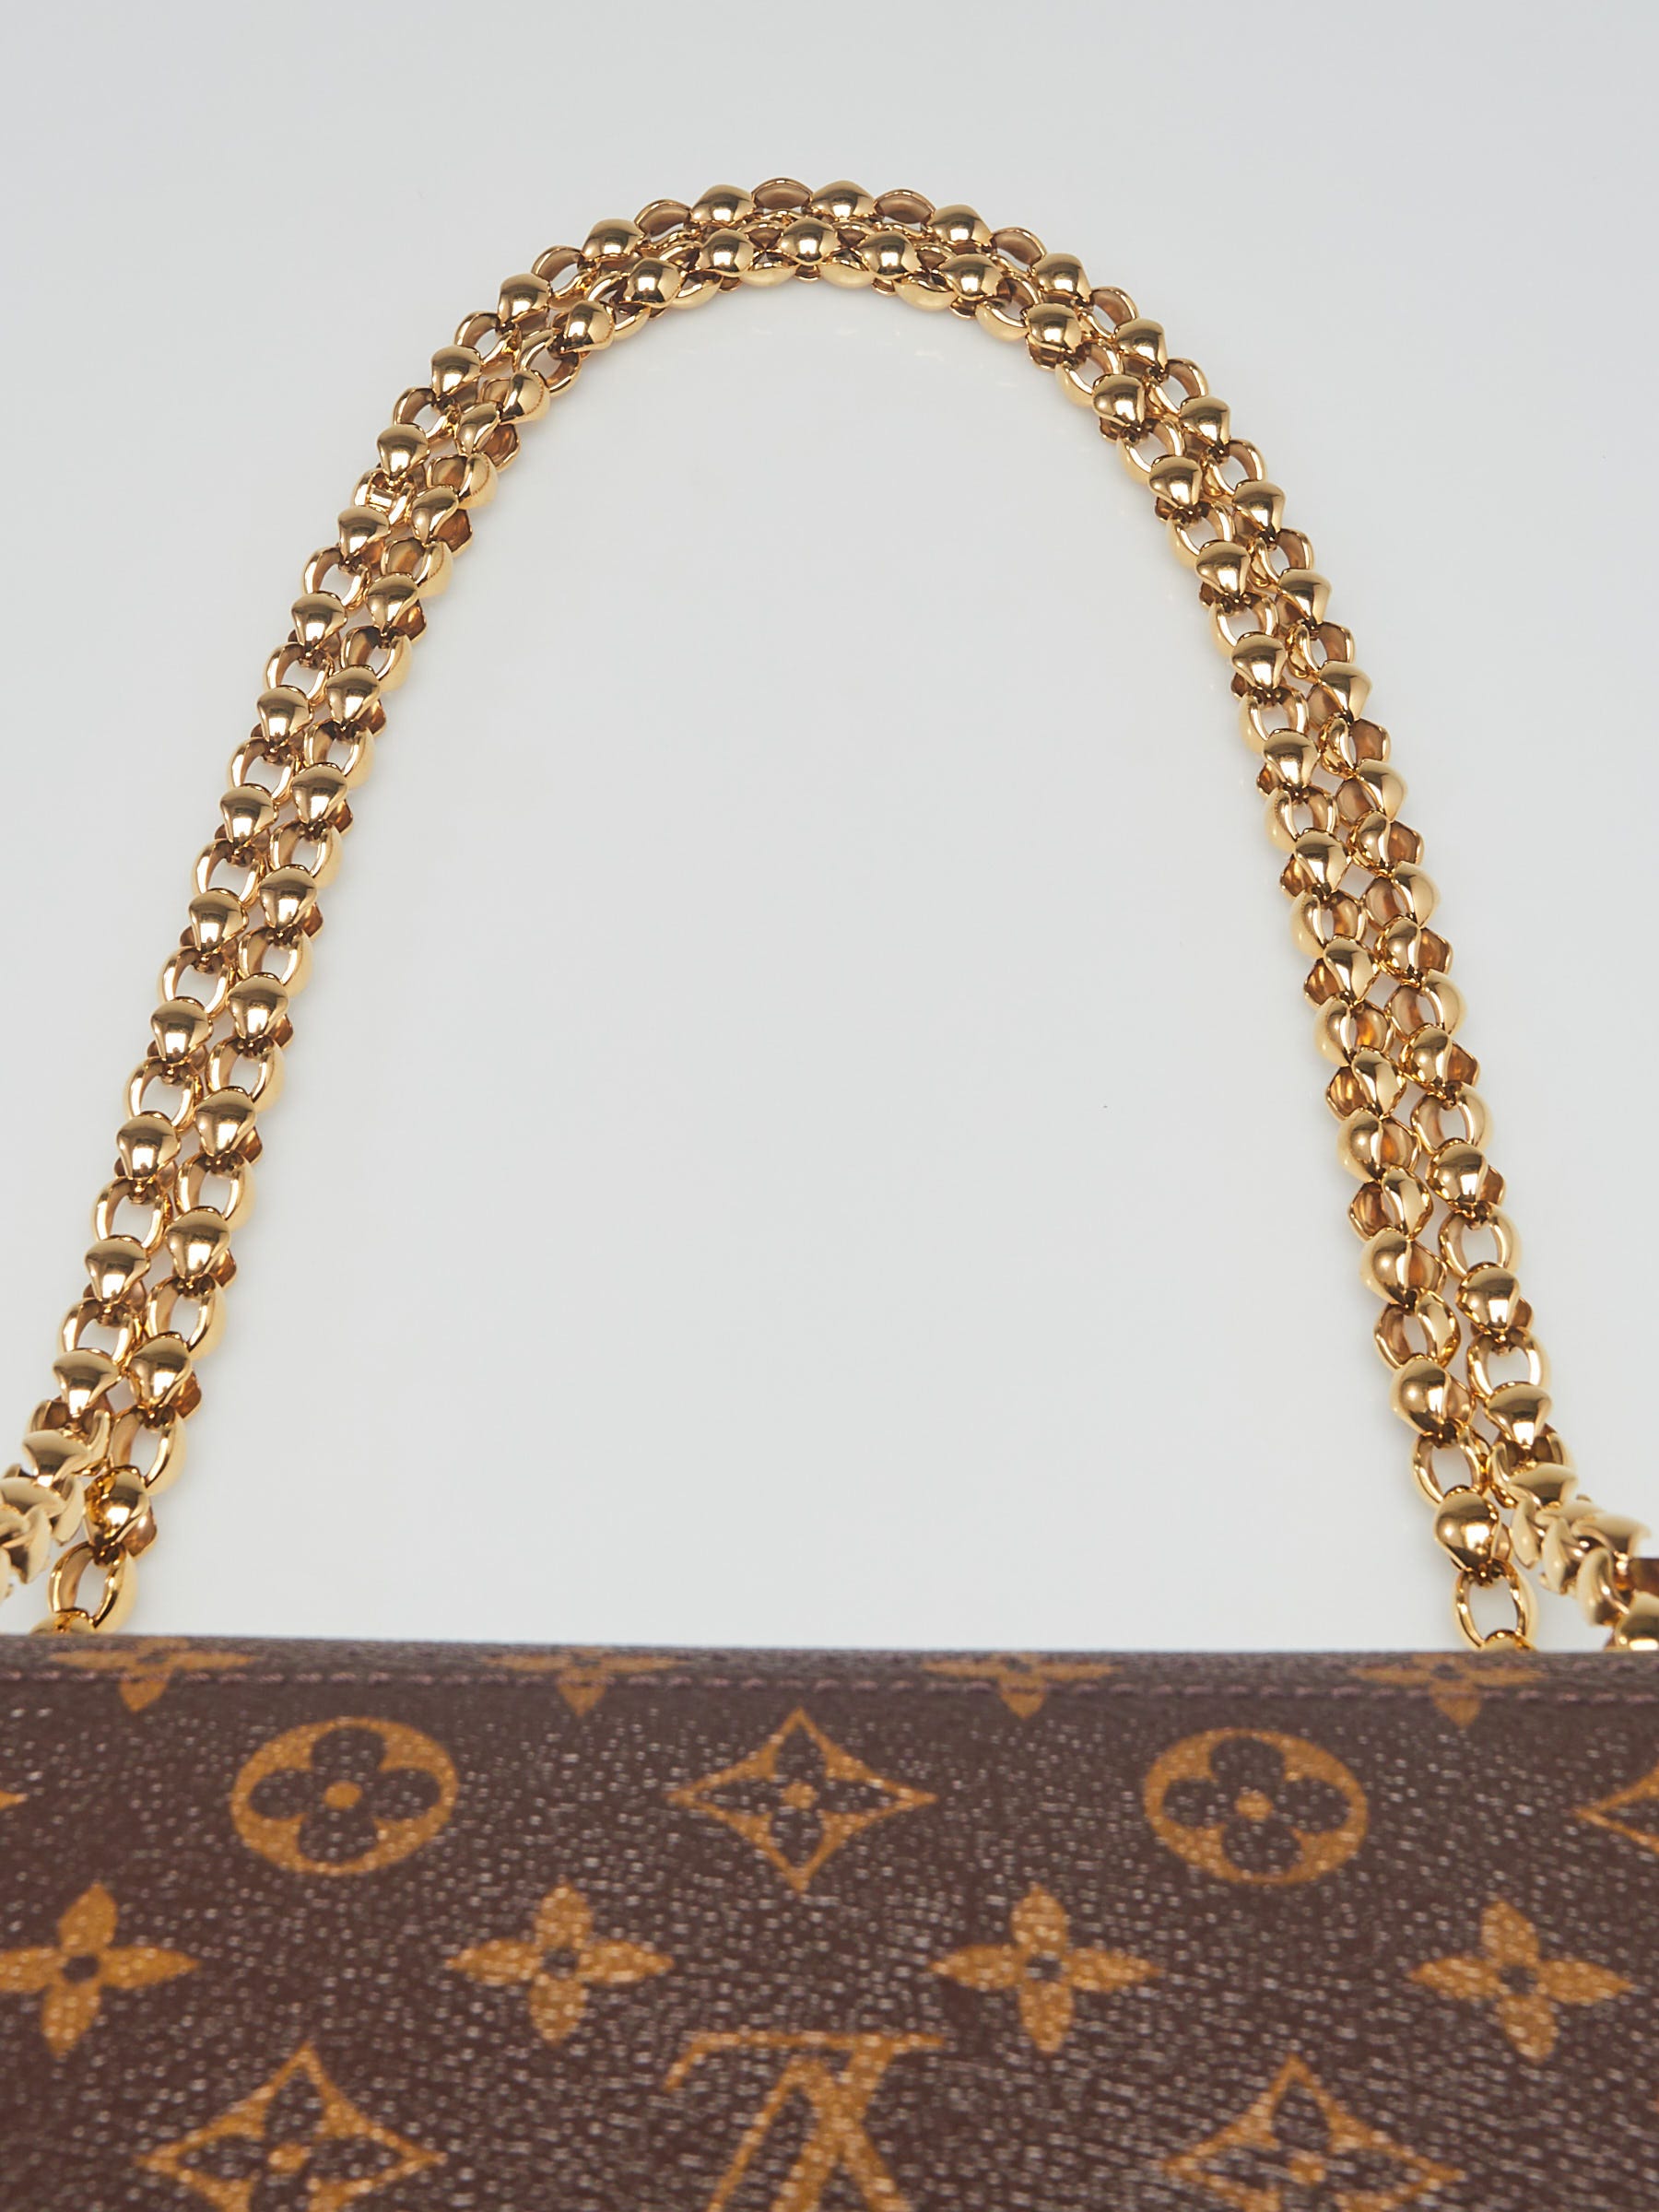 Louis Vuitton Monogram Victoire Shoulder Chain Bag 100% AUTHENTIC